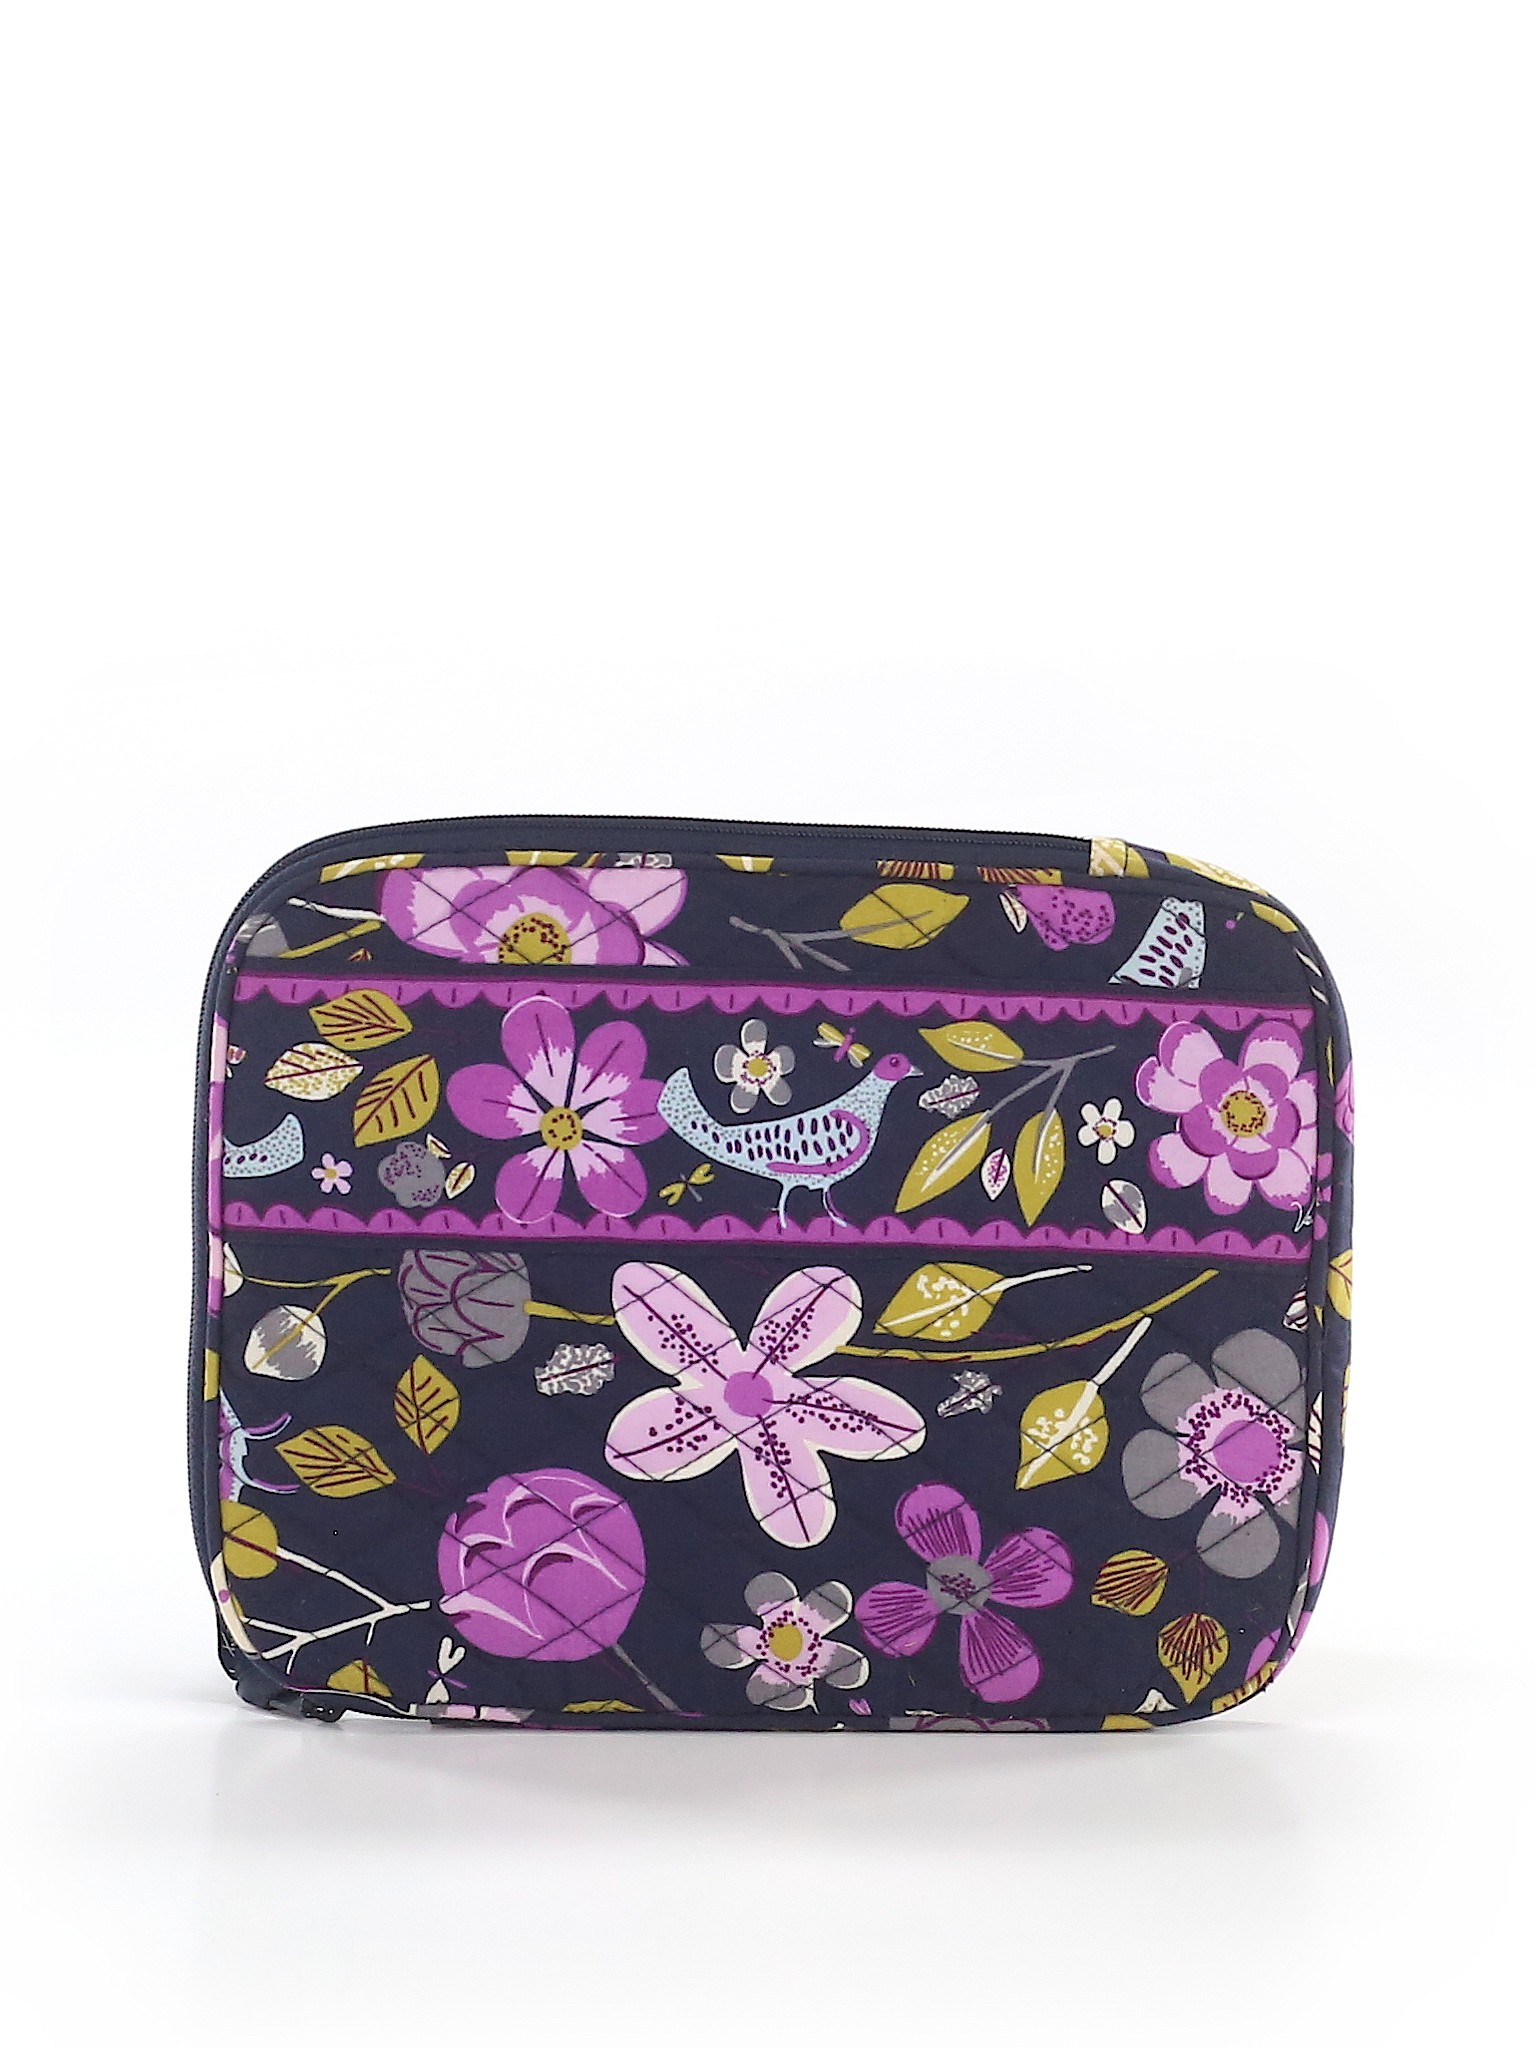 Vera Bradley 100% Cotton Floral Purple Laptop Bag One Size - 64% off ...